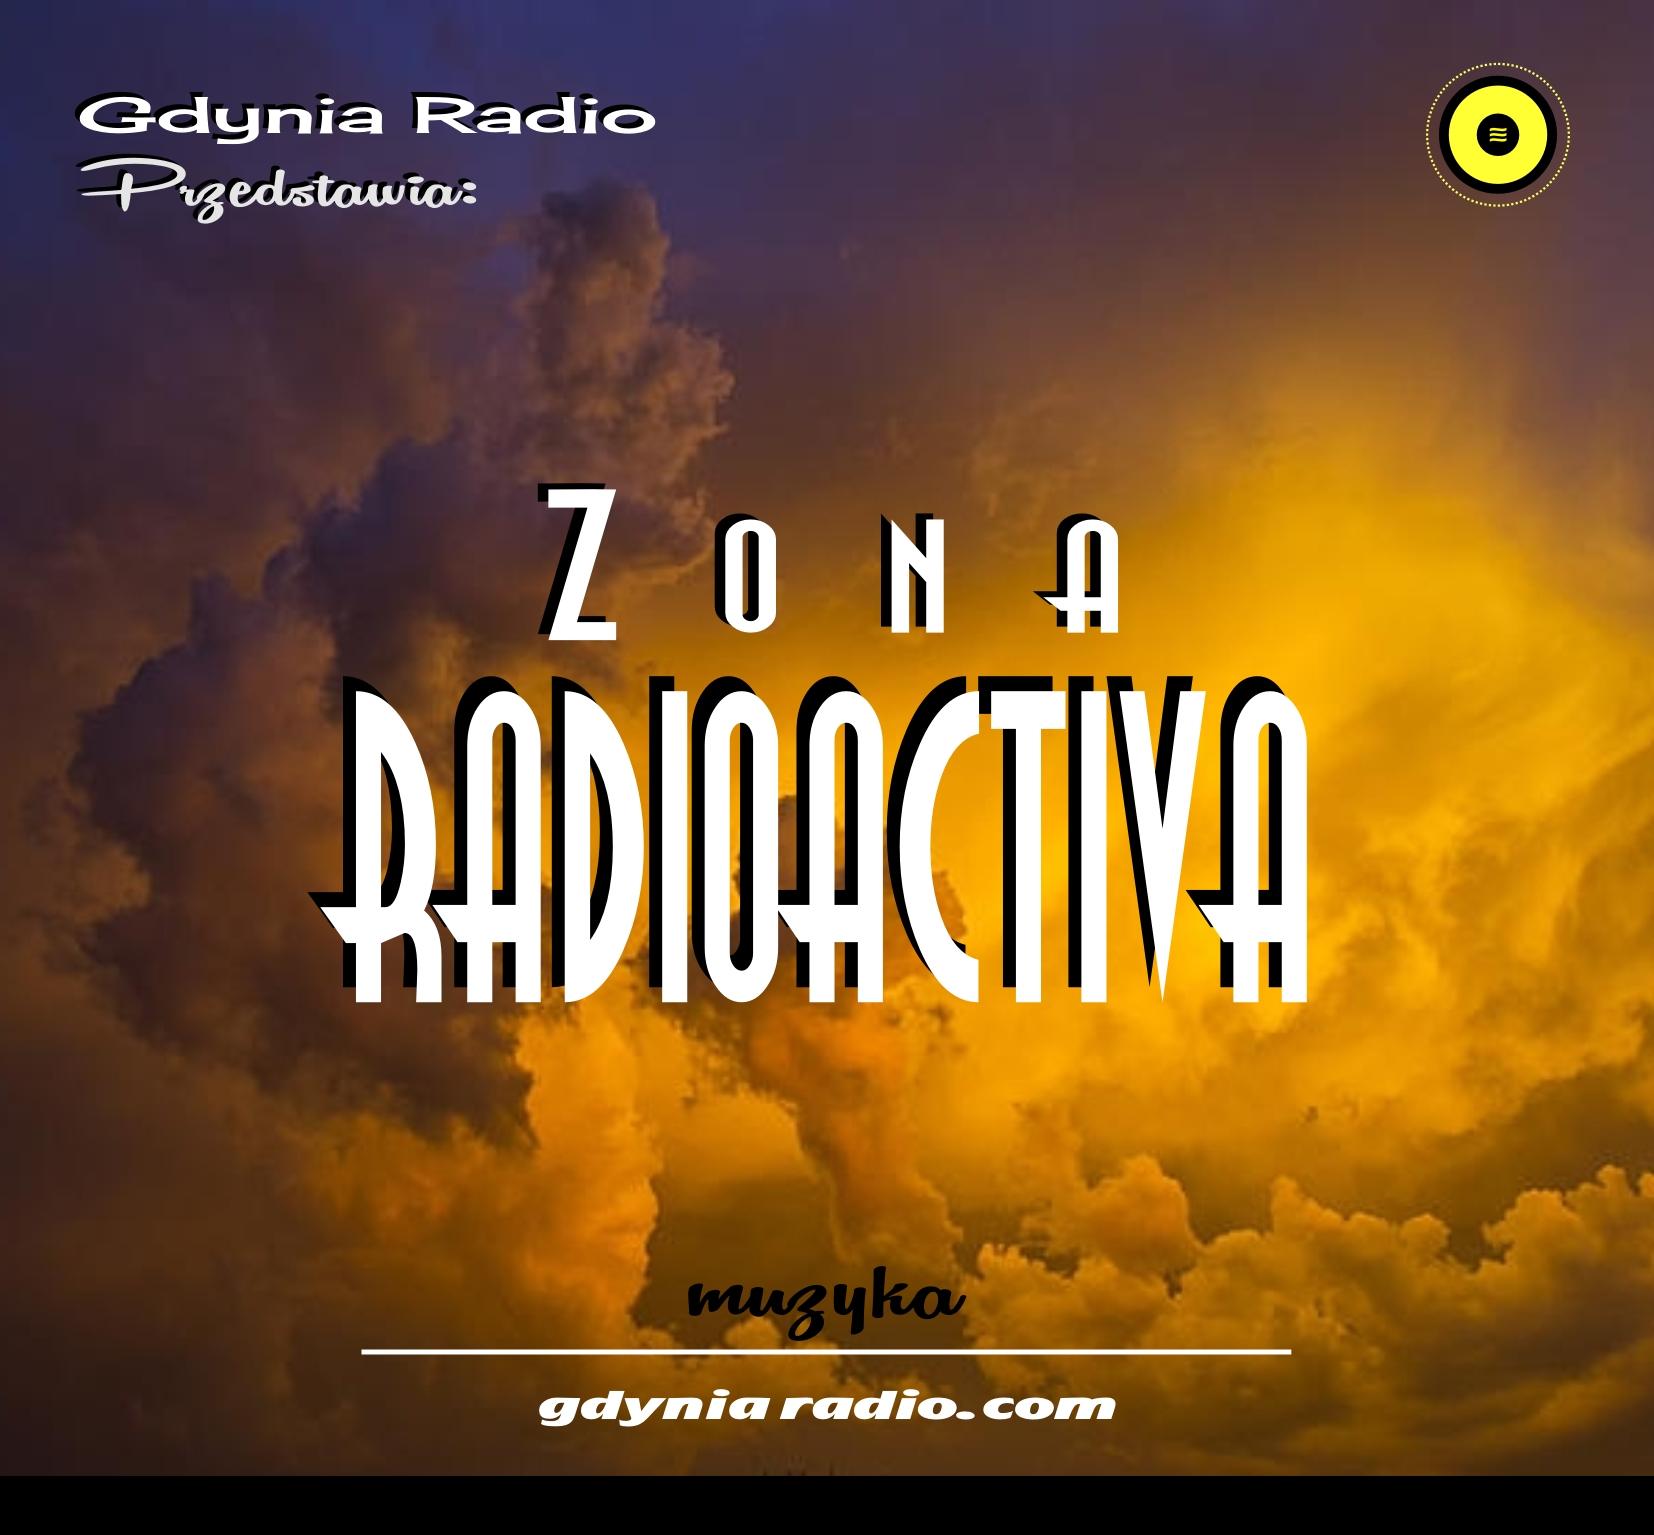 Gdynia Radio -2021gr- Zona Radioactiva II - GR